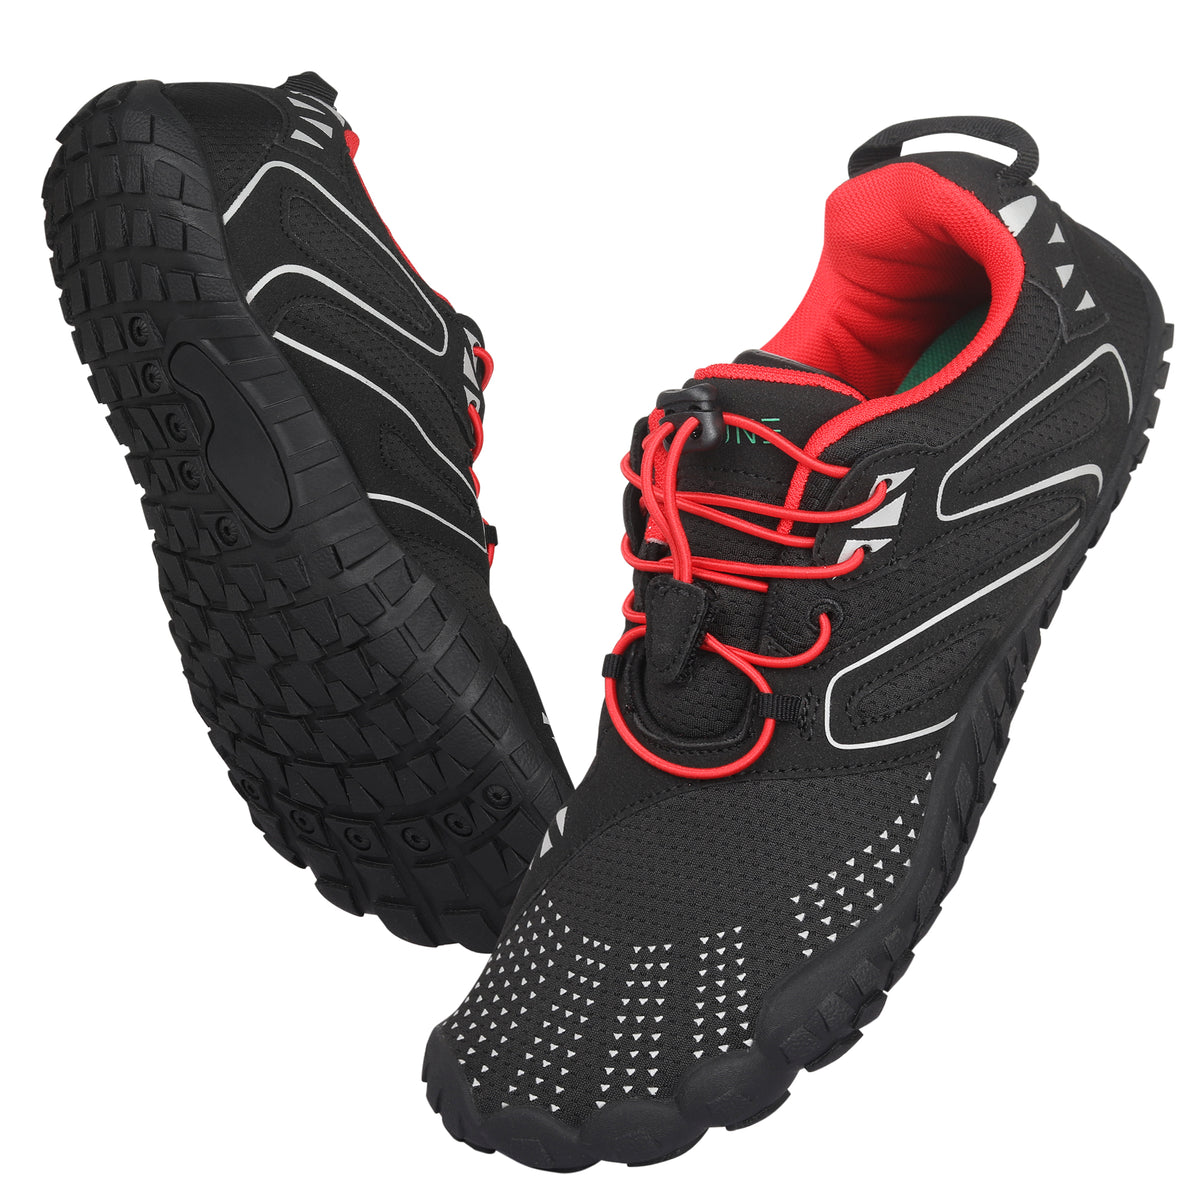 ANDUNE Women’s Barefoot & Minimalist Cross Training Shoes – All Terrain Red Dash